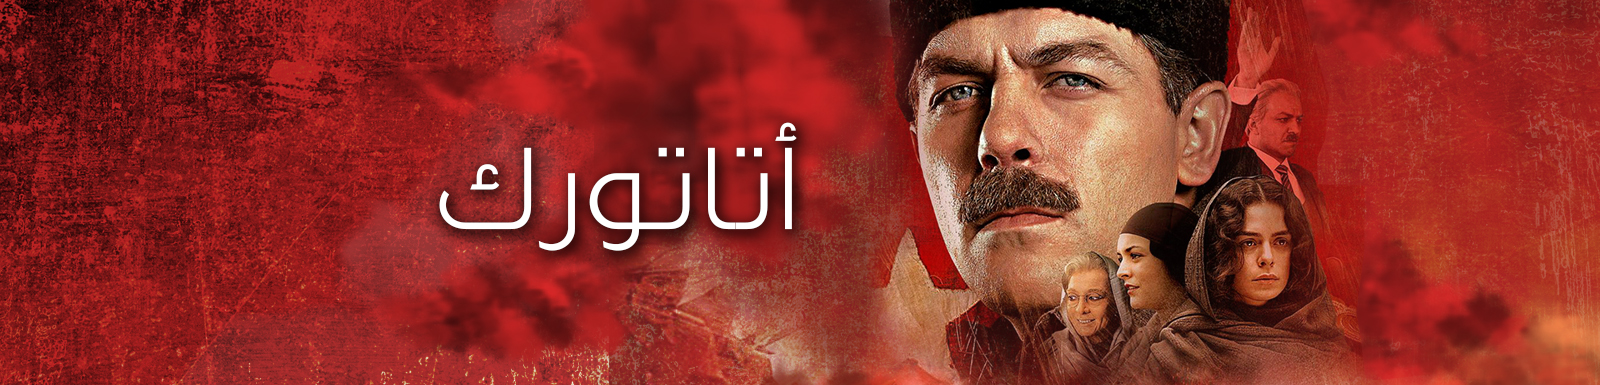 مشاهدة وتحميل مسلسل أتاتورك الحلقة 2 الثانية 2015 كاملة